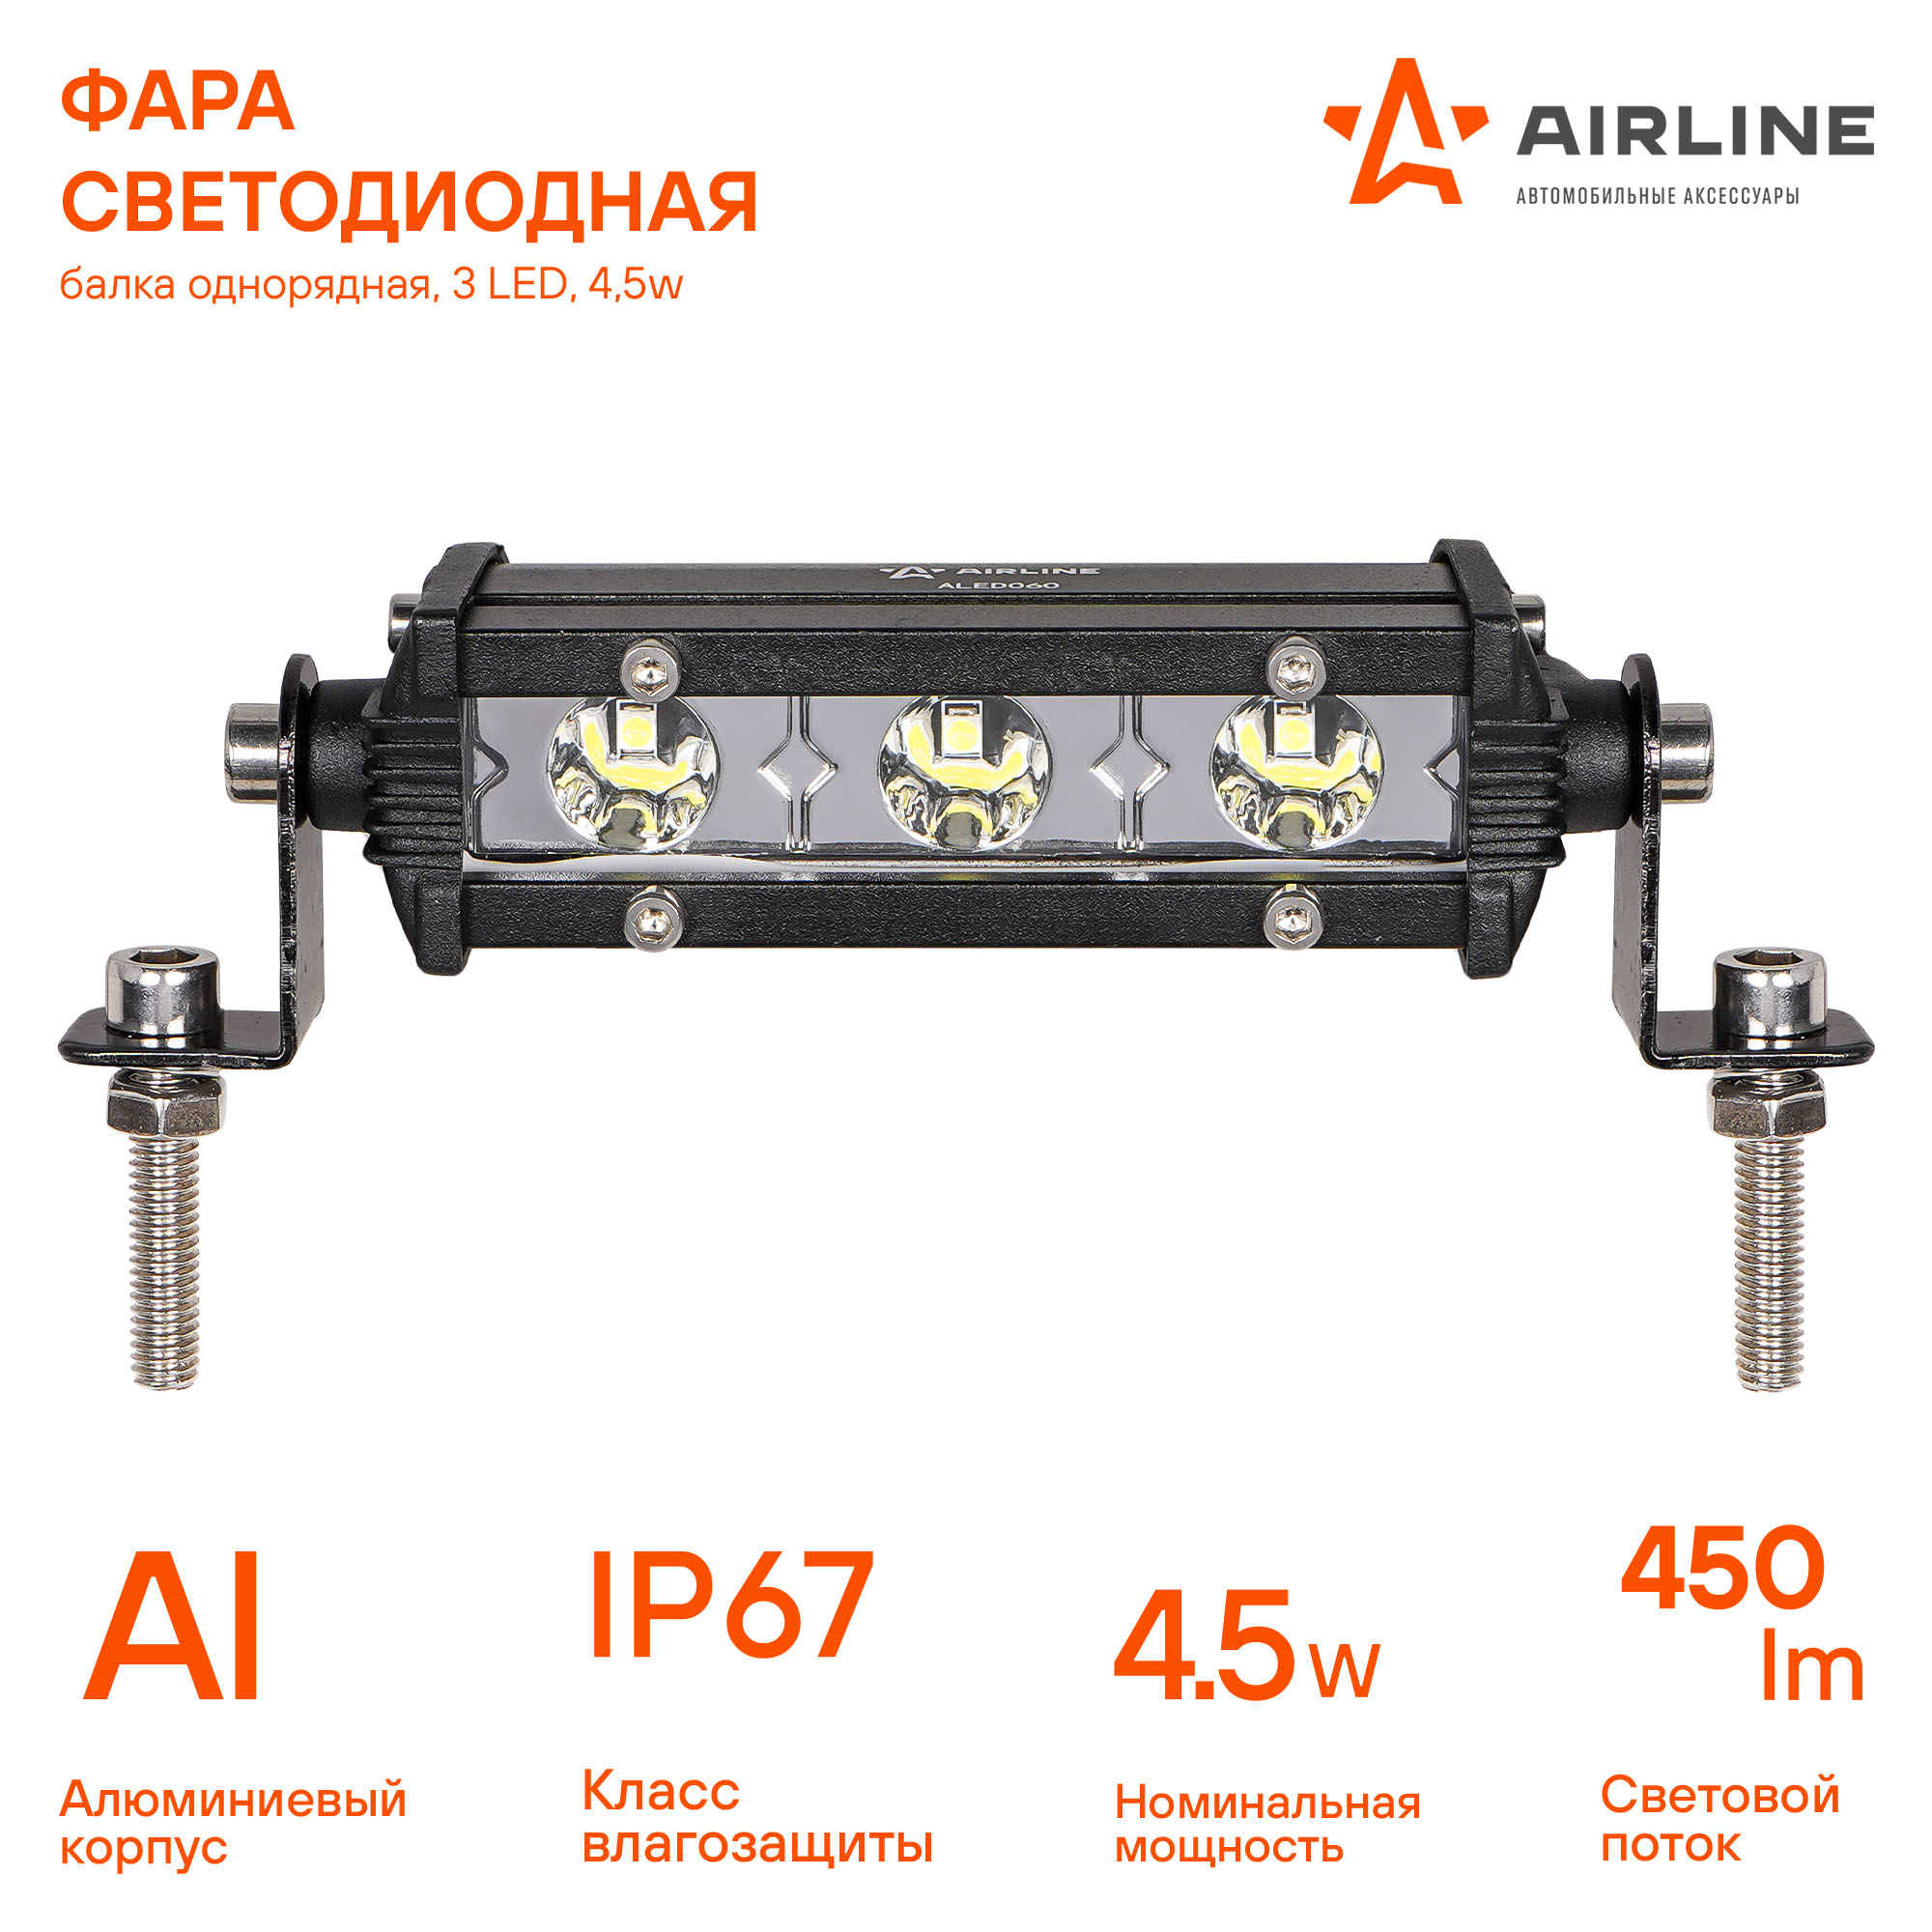 Фара светодиодная (балка) однорядная, 3 led, направленный свет, 4,5w (108x30x47) AIRLINE                ALED060